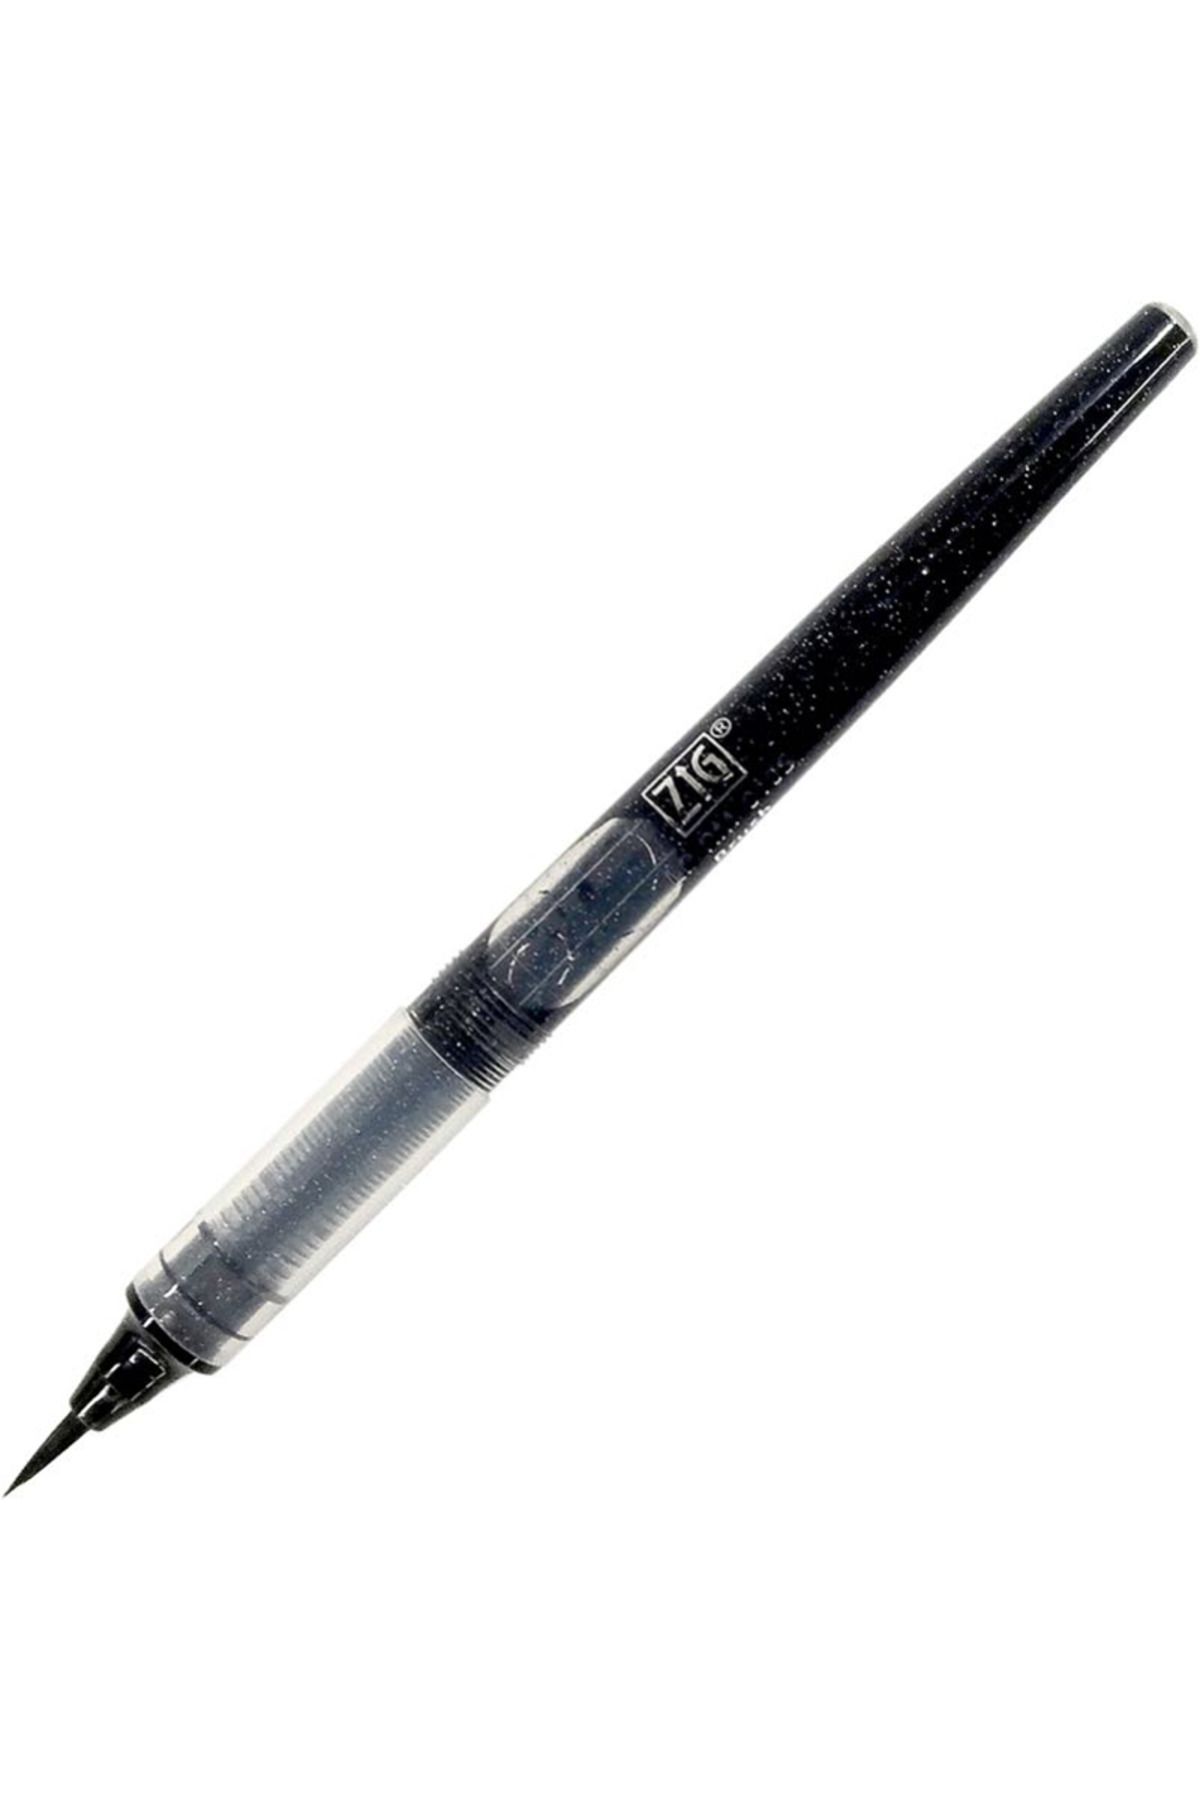 Zig Letter Pen Cocoıro Refıll Rm010s Brush Siyah 1 Adet